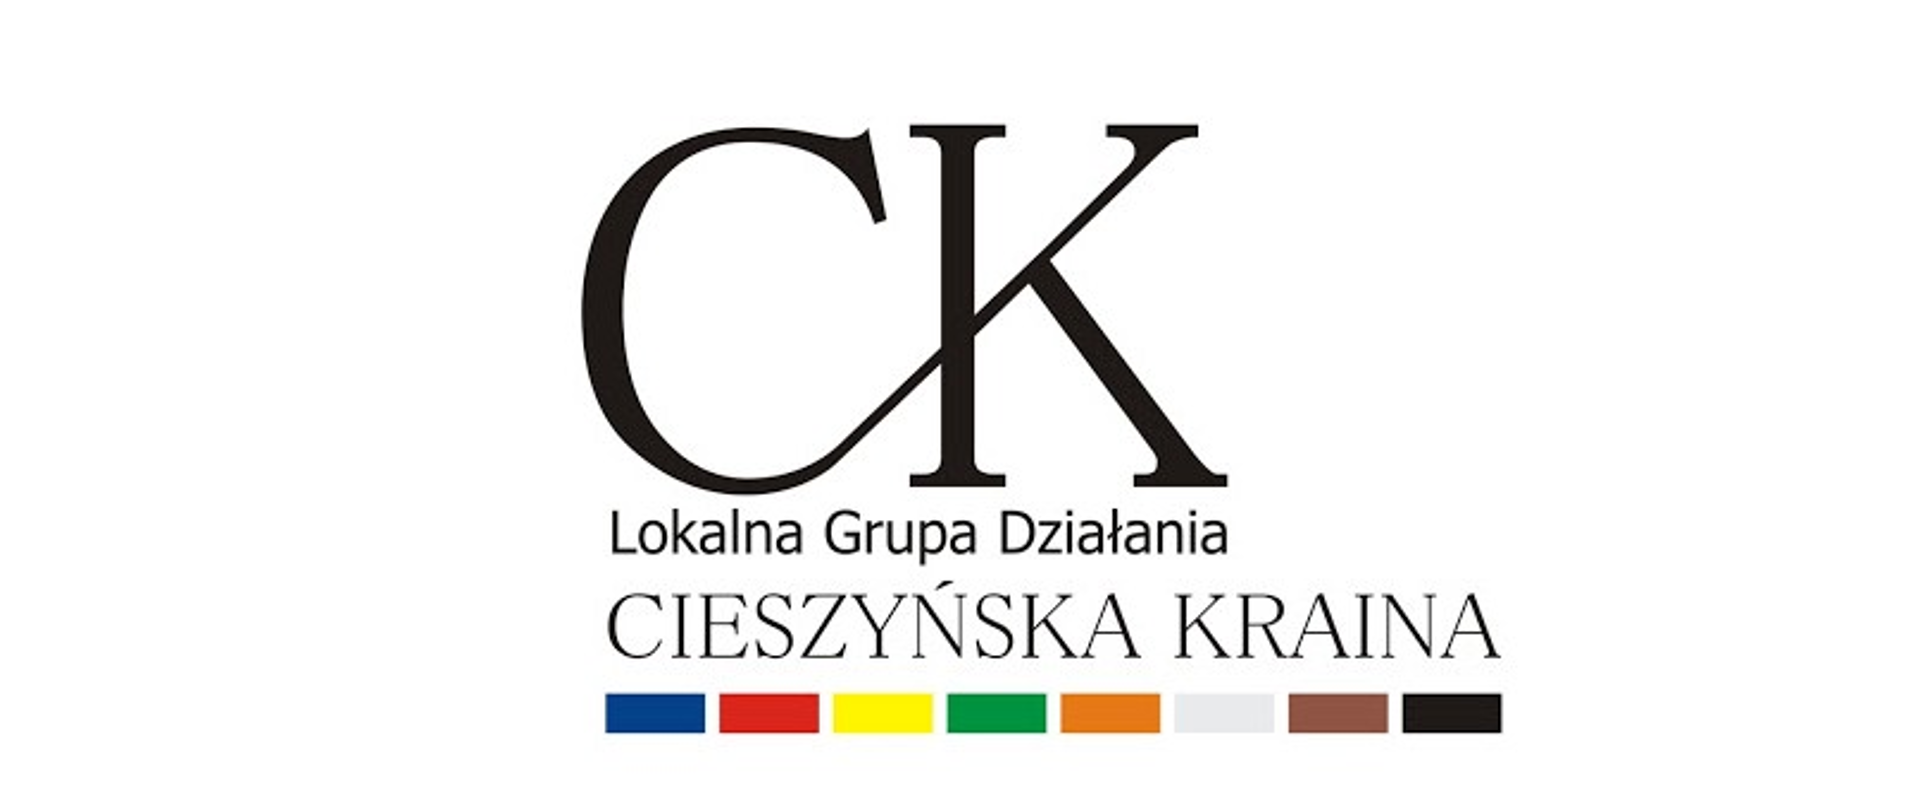 Hażlach: Ogłoszenie LGD „Cieszyńska Kraina” o naborach wniosków